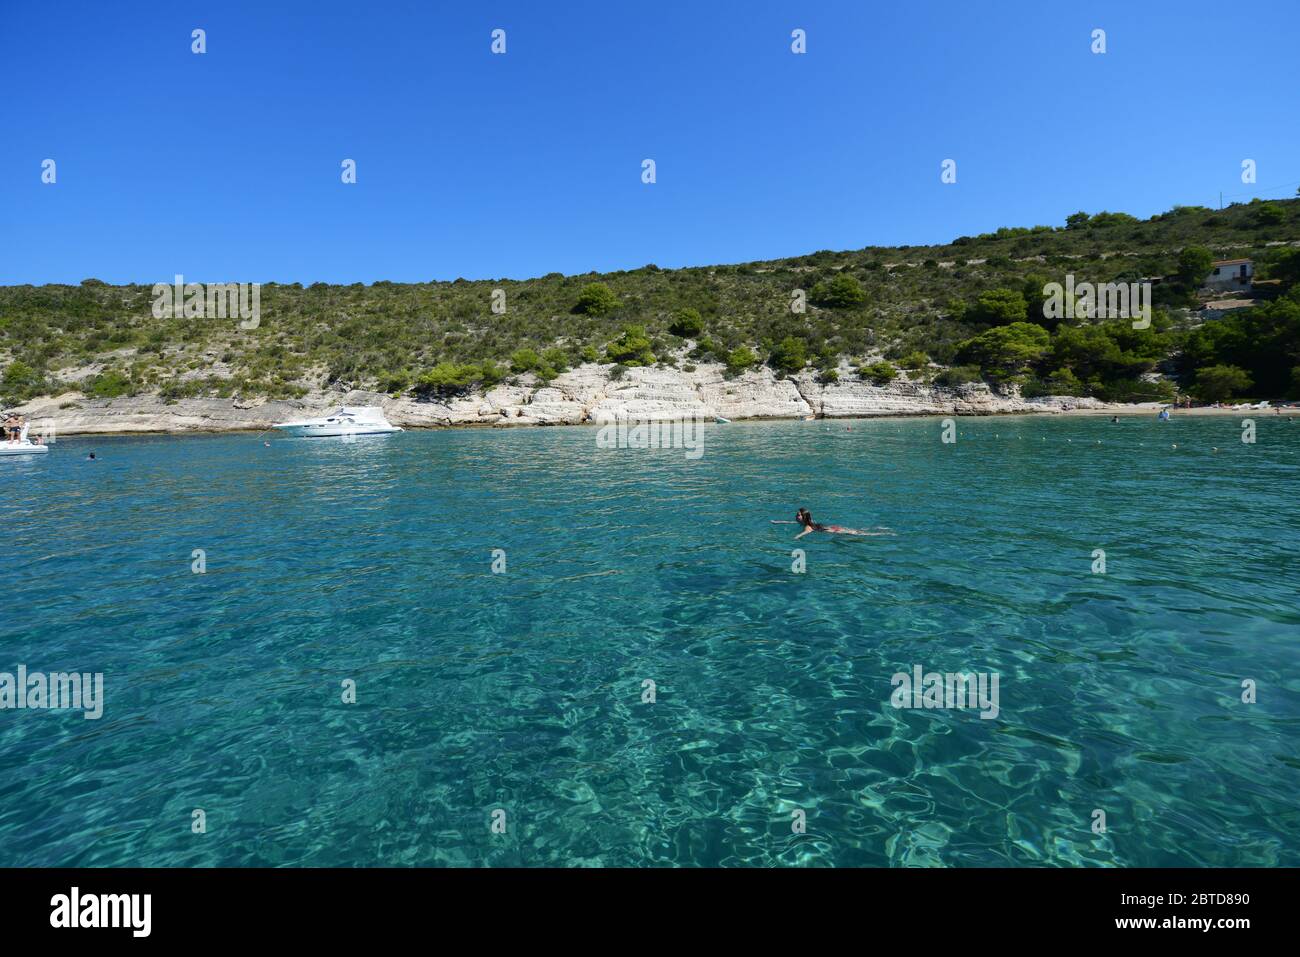 Nuotare nelle acque incontaminate del mare Adriatico vicino Biševo isola nell'arcipelago centrale della Dalmazia in Croazia. Foto Stock